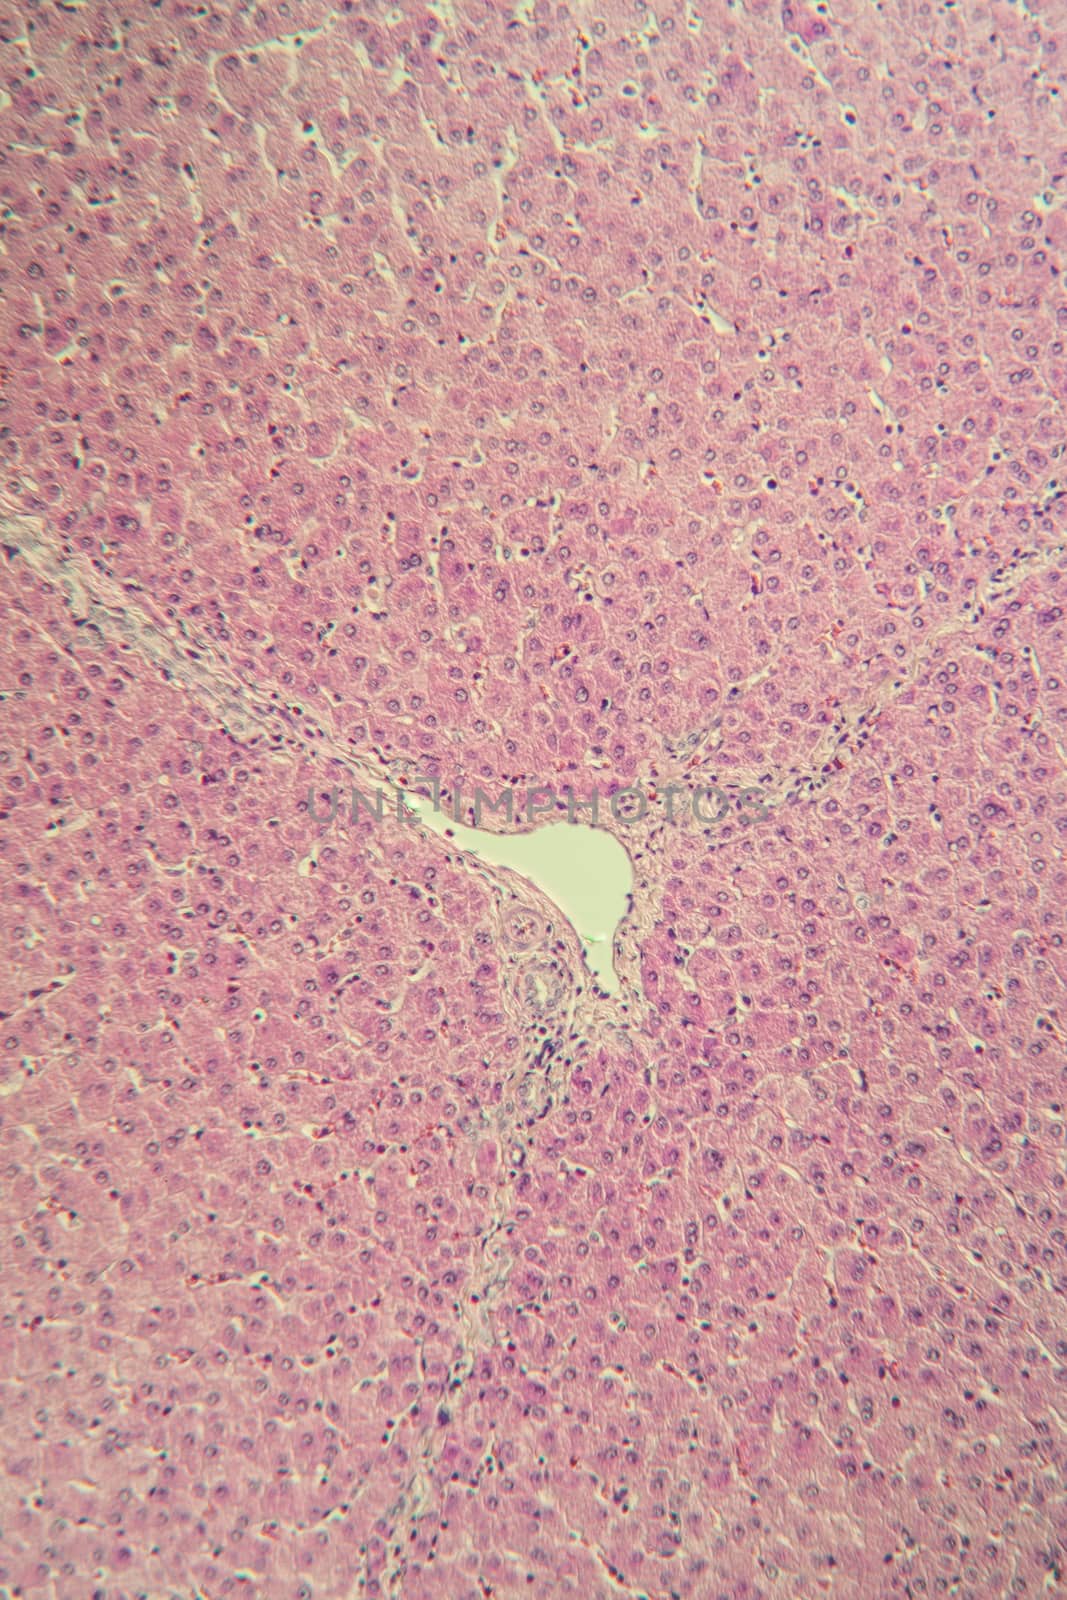 Pork liver tissue cut 100x